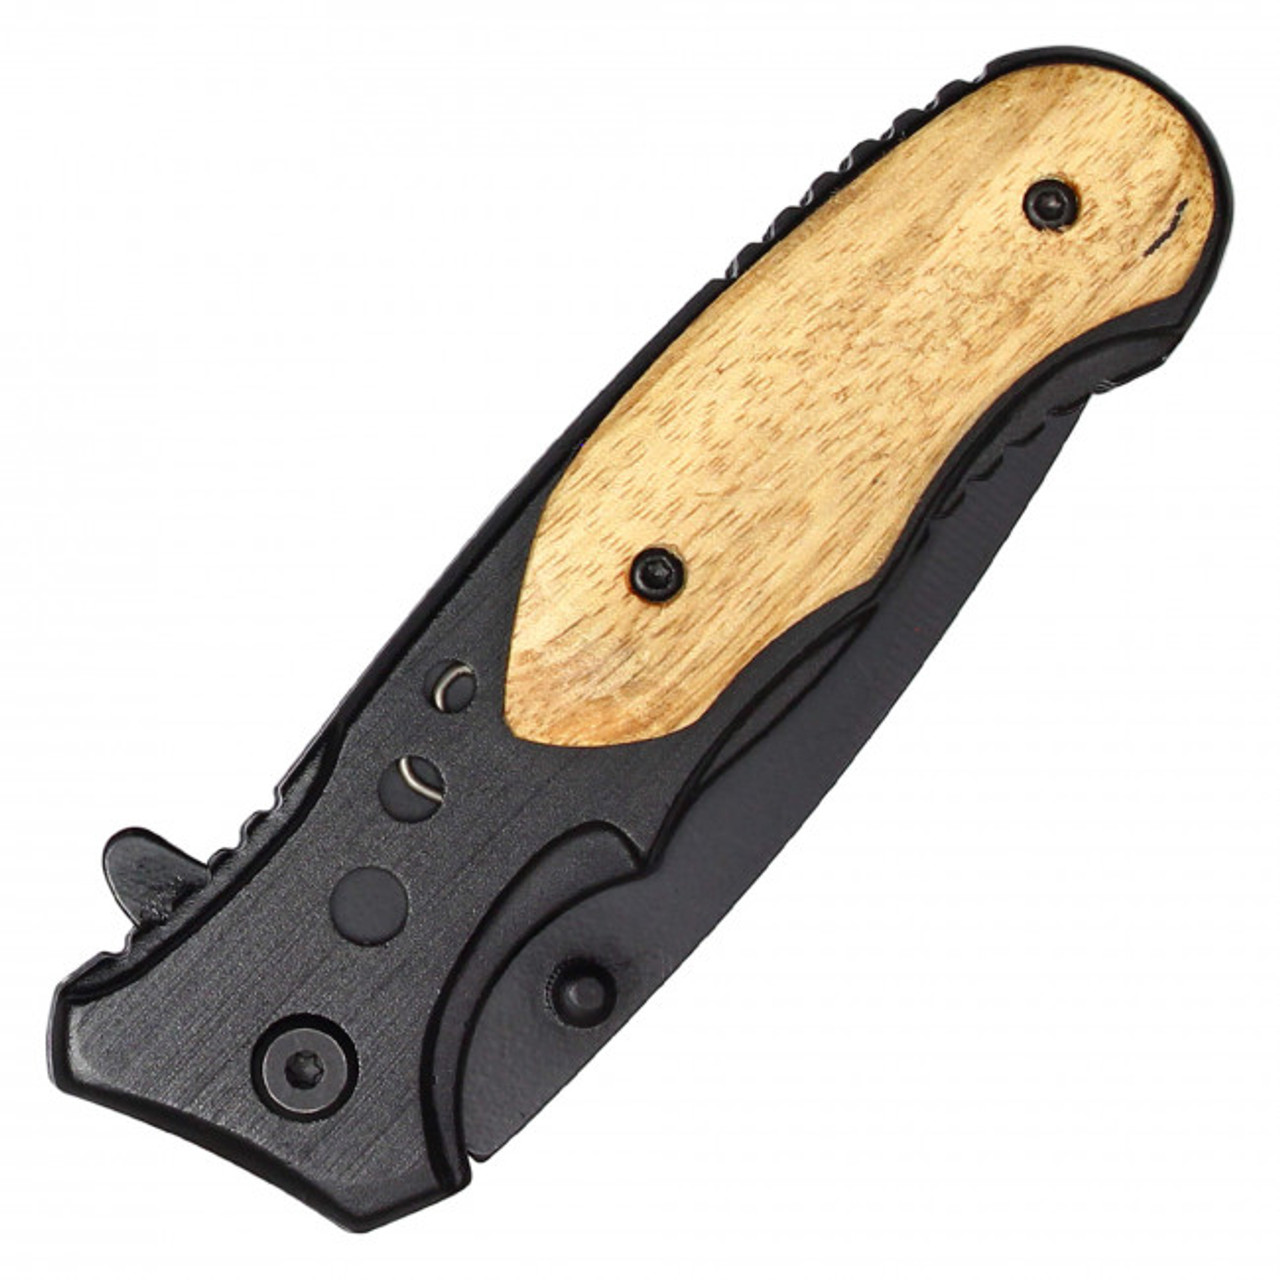 7.75" Black Assisted Pocket Knife W/ Wooden Handle